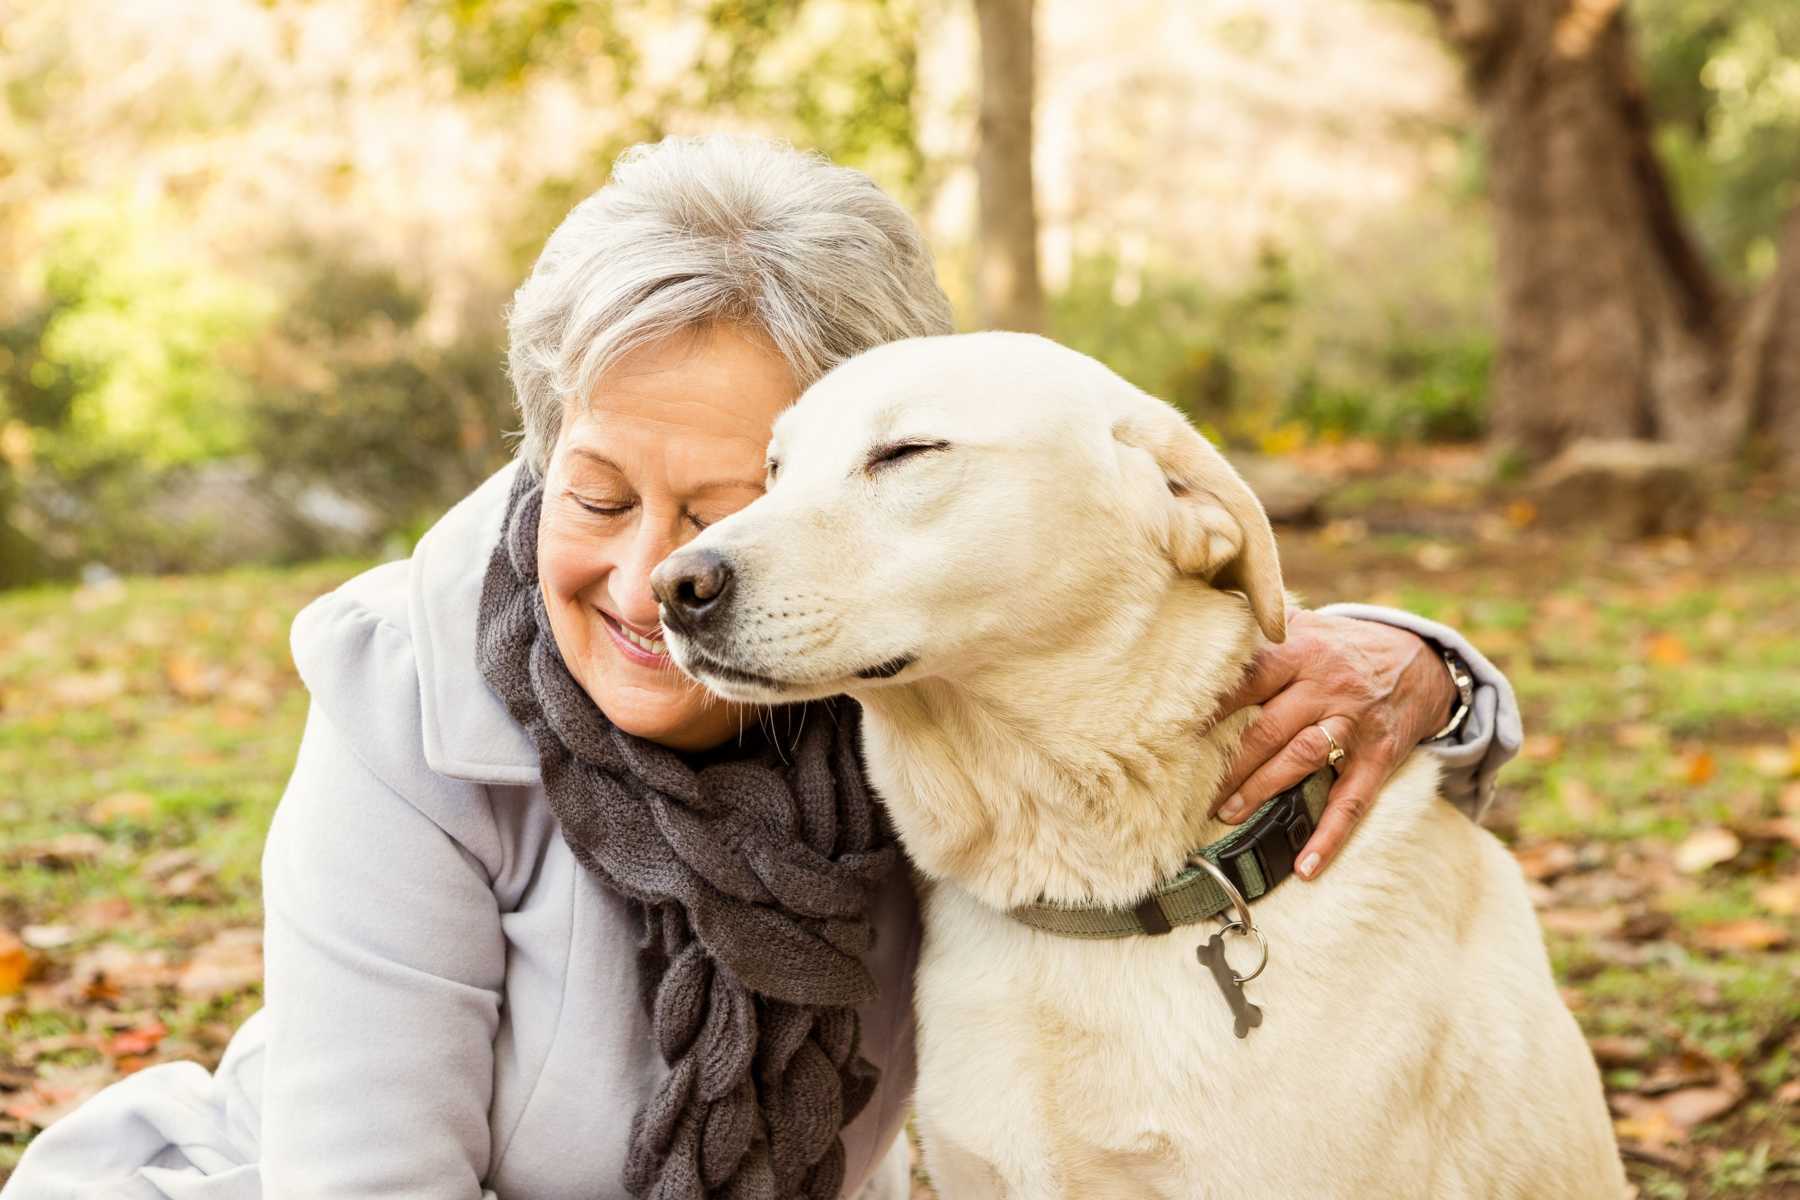 Idős korban egy kutya szeretetteljes társasága segíthet leküzdeni a magányt